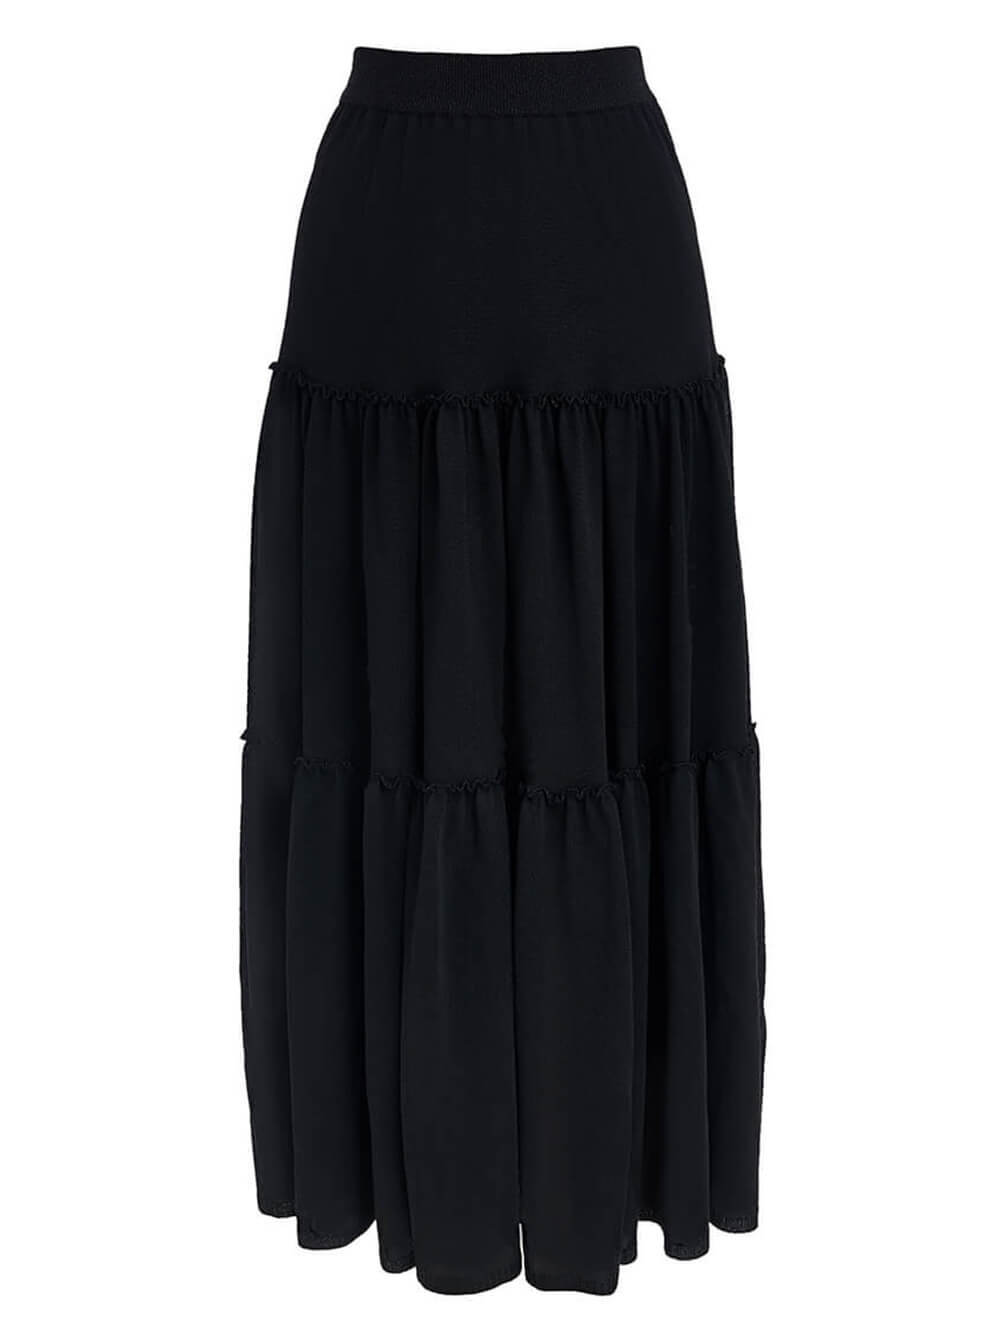 Женская юбка черного цвета из вискозы - фото 1